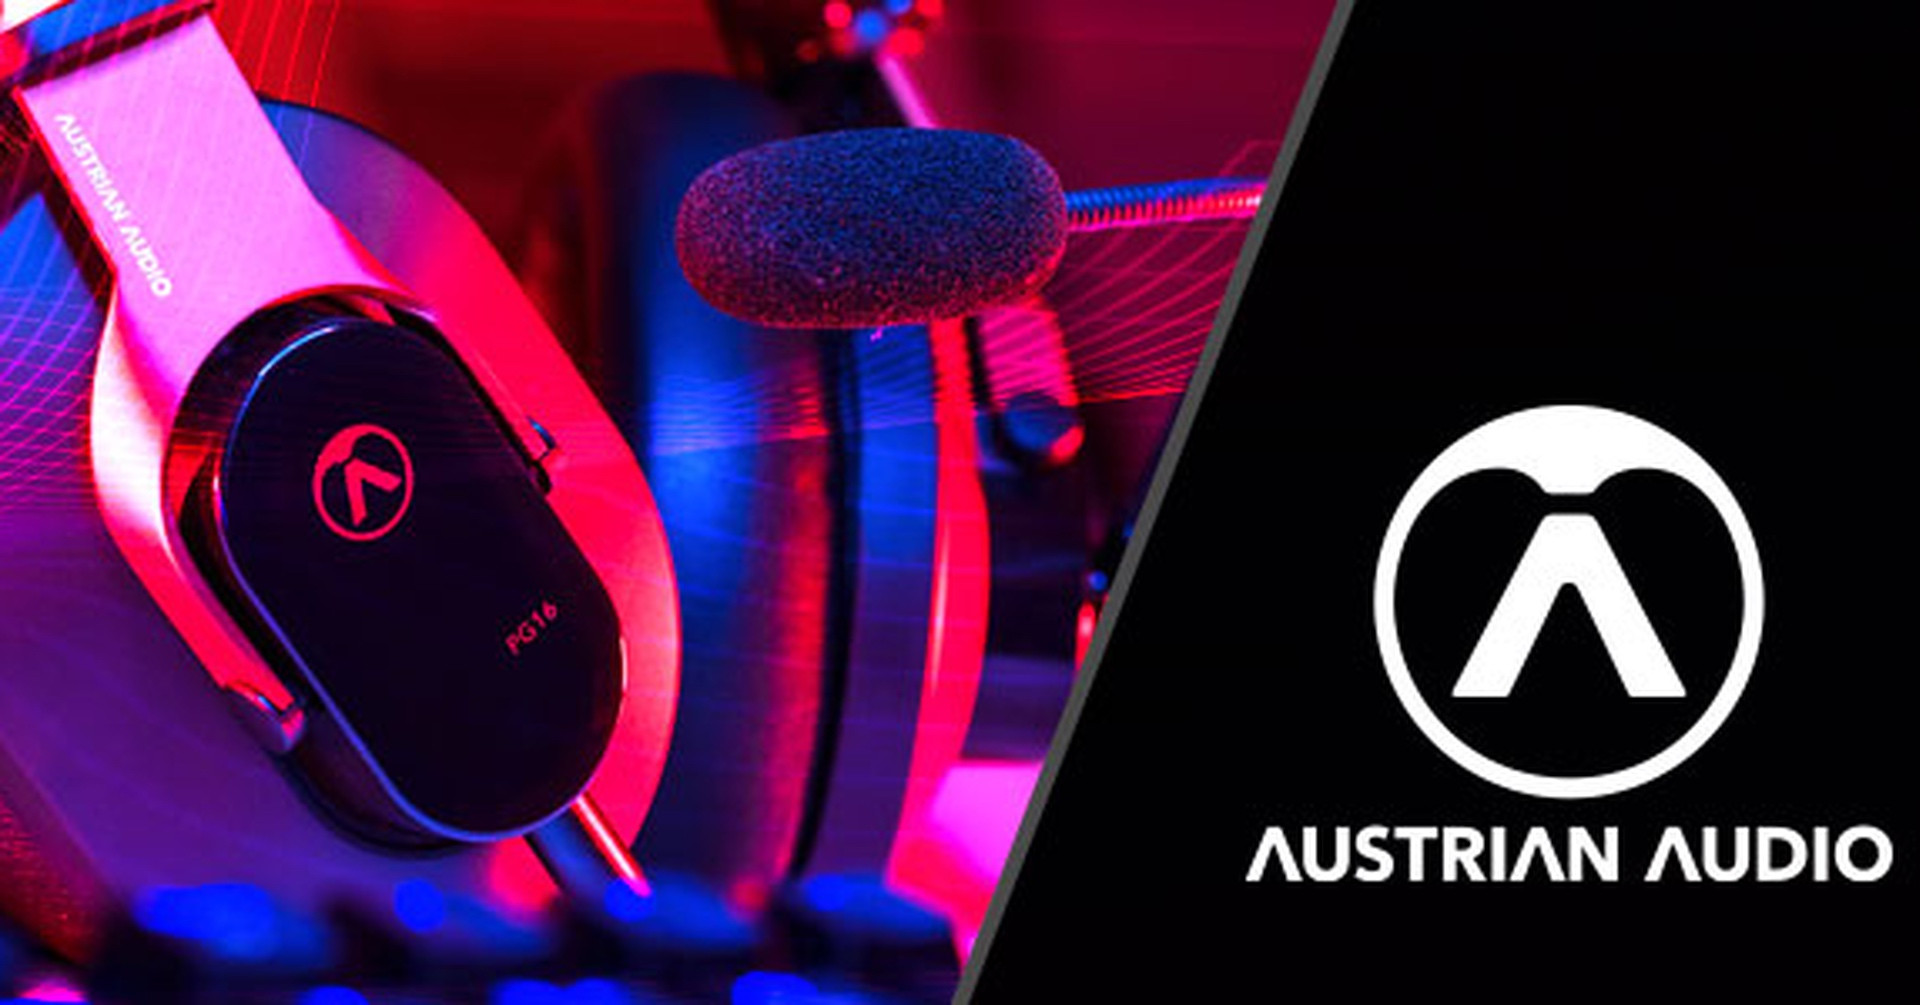 Nowe słuchawki Austrian Audio - PG16 i PB17